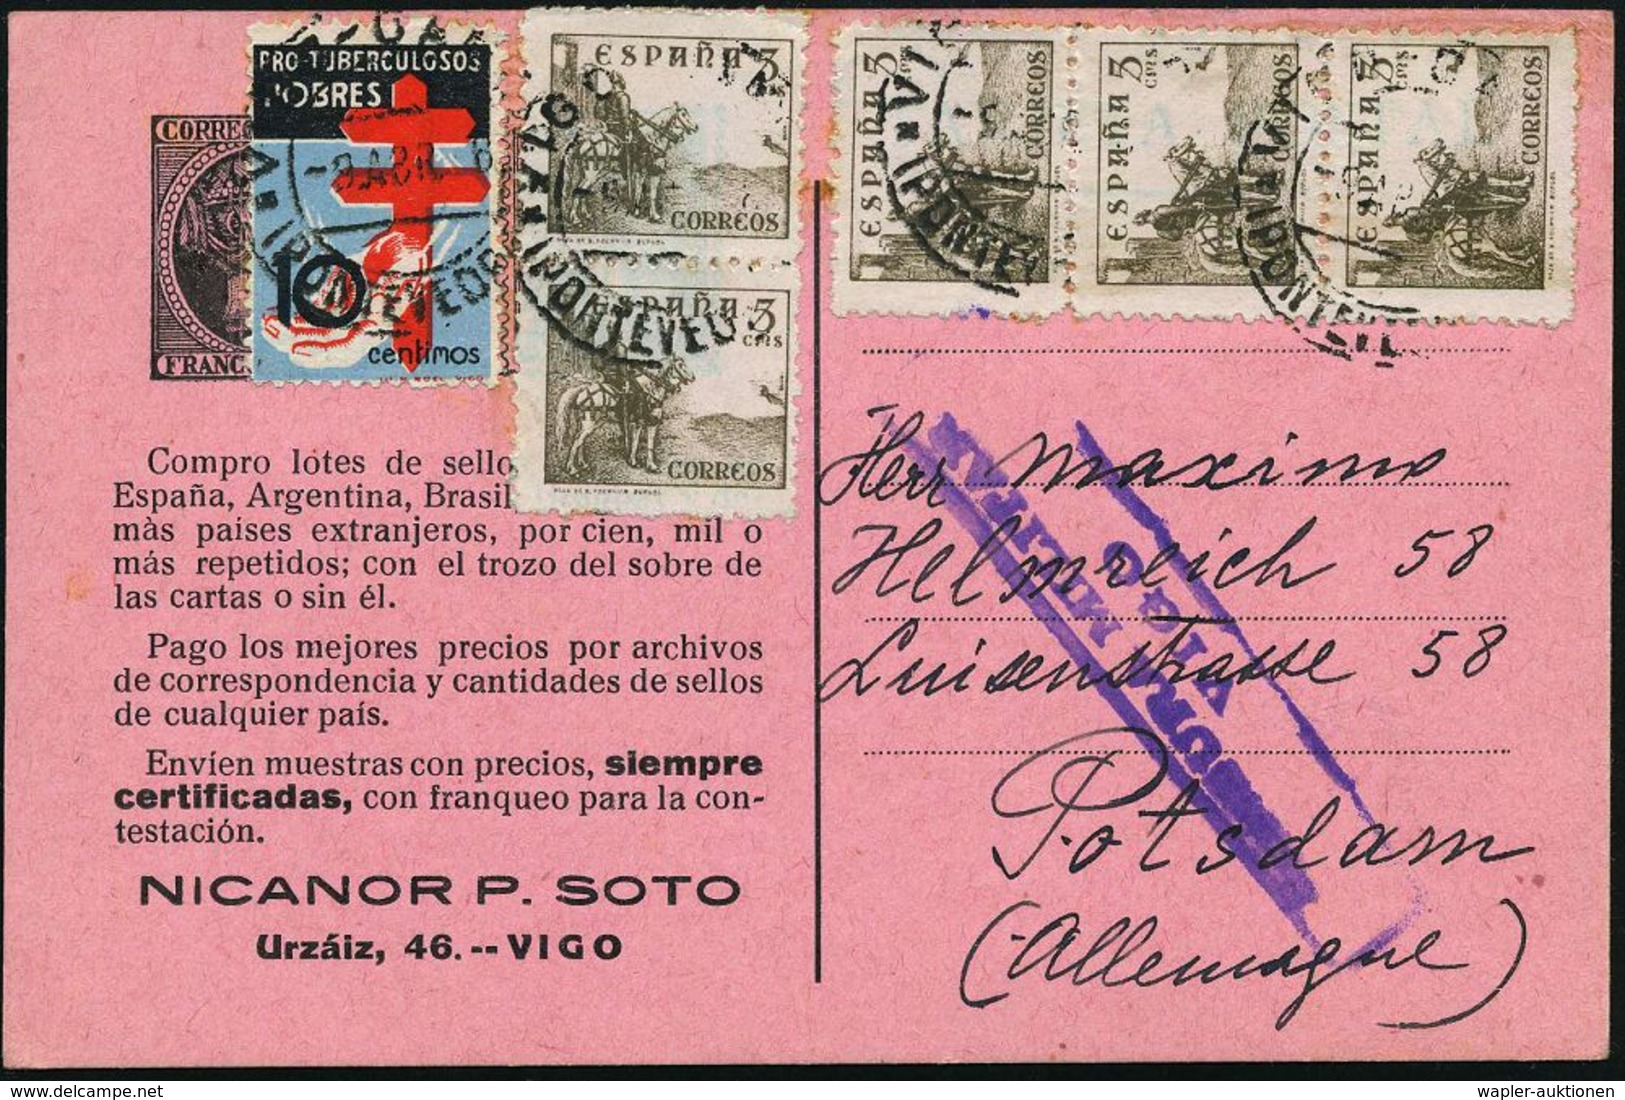 TUBERKULOSE / TBC-VORSORGE : SPANIEN 1938 (8.4.) 5 C. "El Cid", Reine MeF: 5 Stück + Tbc-Zwangs-Zuschlag 10 C. (Mi.Zw.23 - Maladies